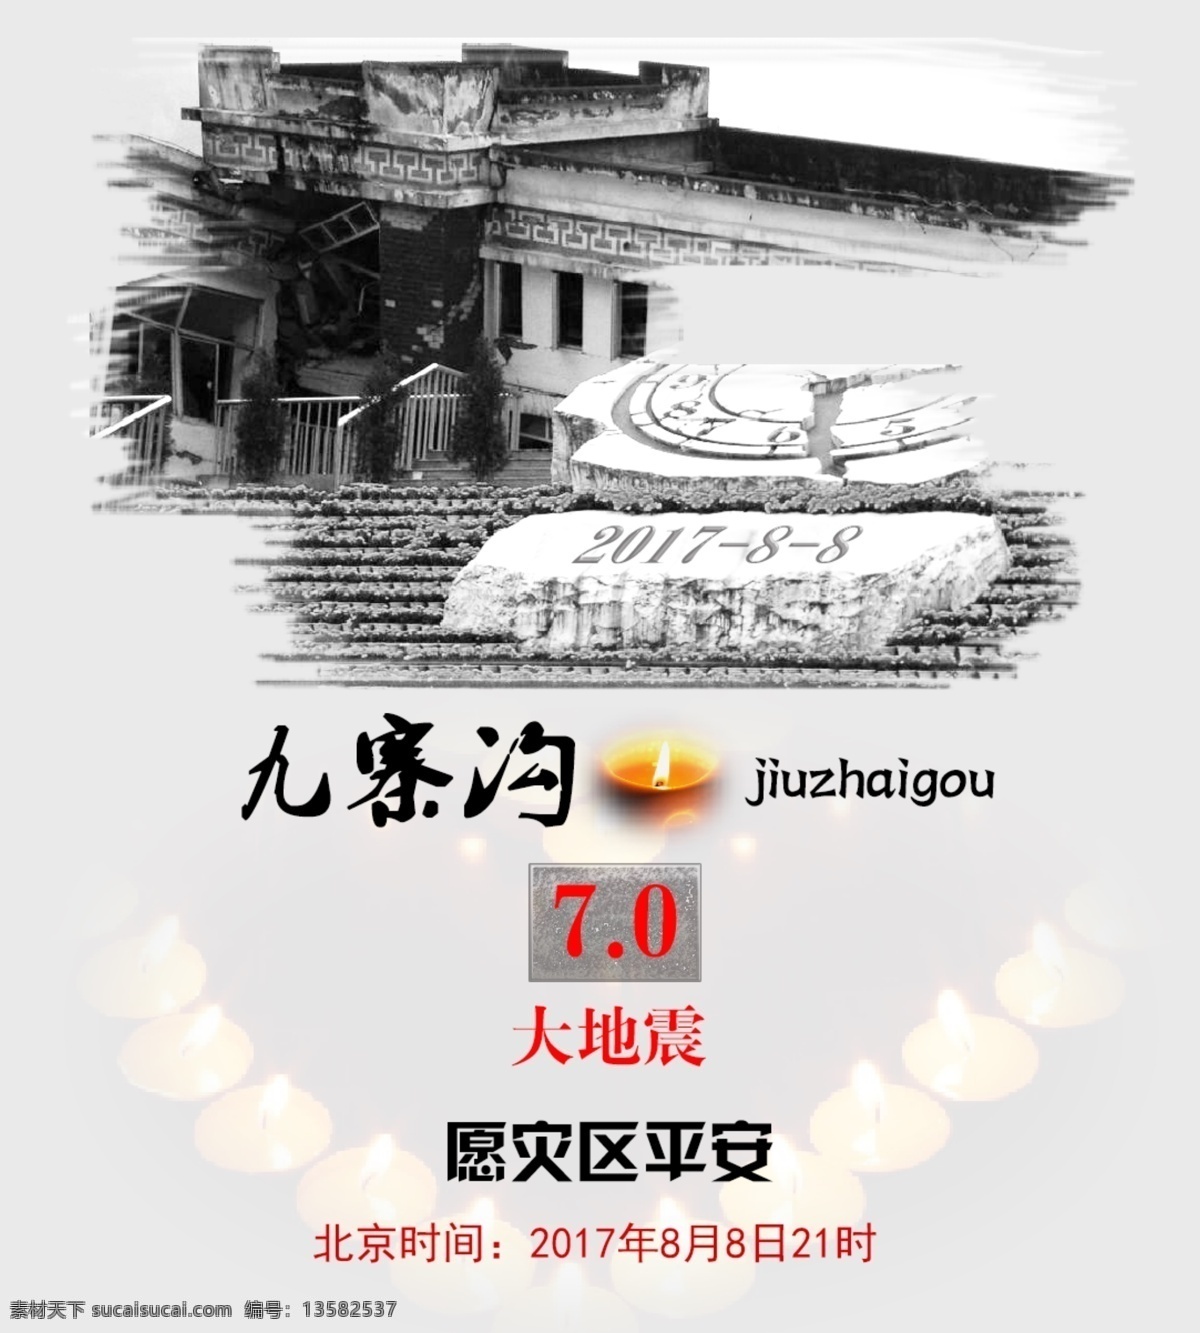 九寨沟 地震 海报